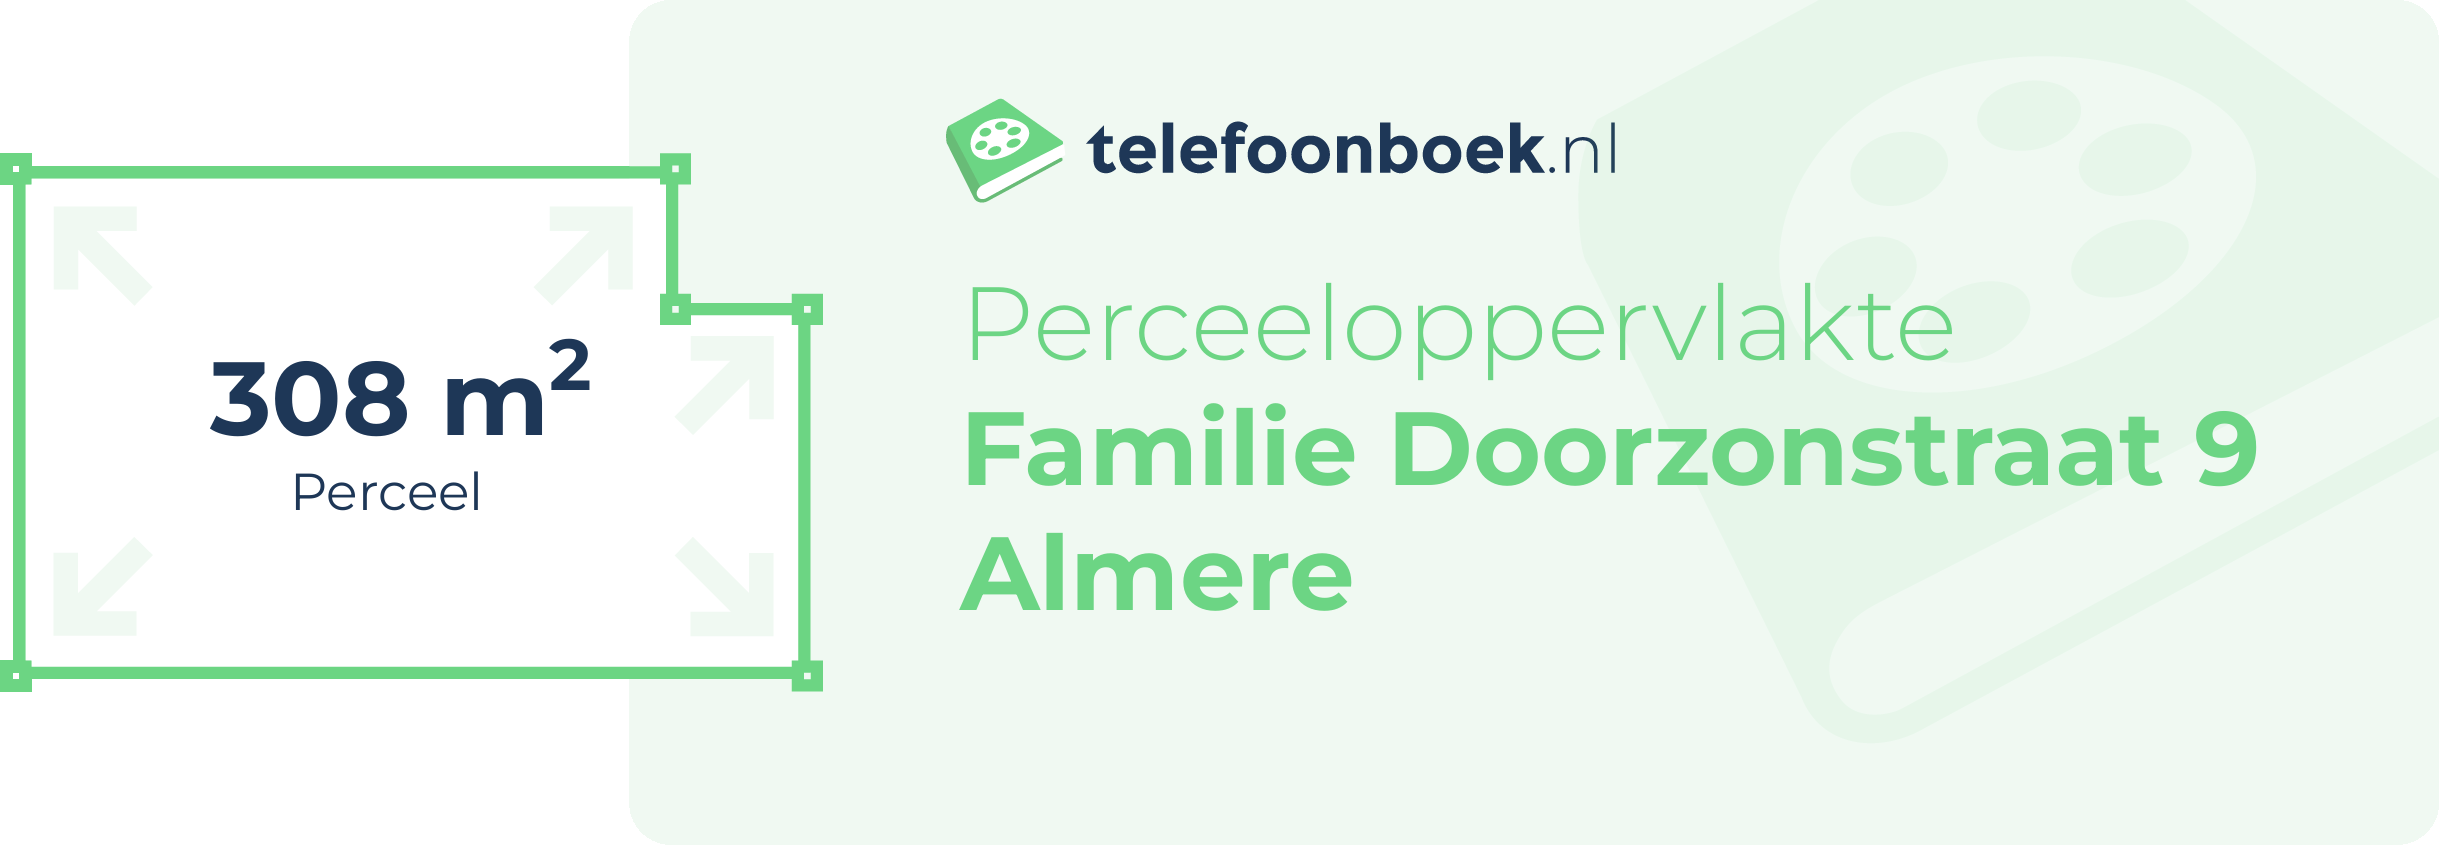 Perceeloppervlakte Familie Doorzonstraat 9 Almere